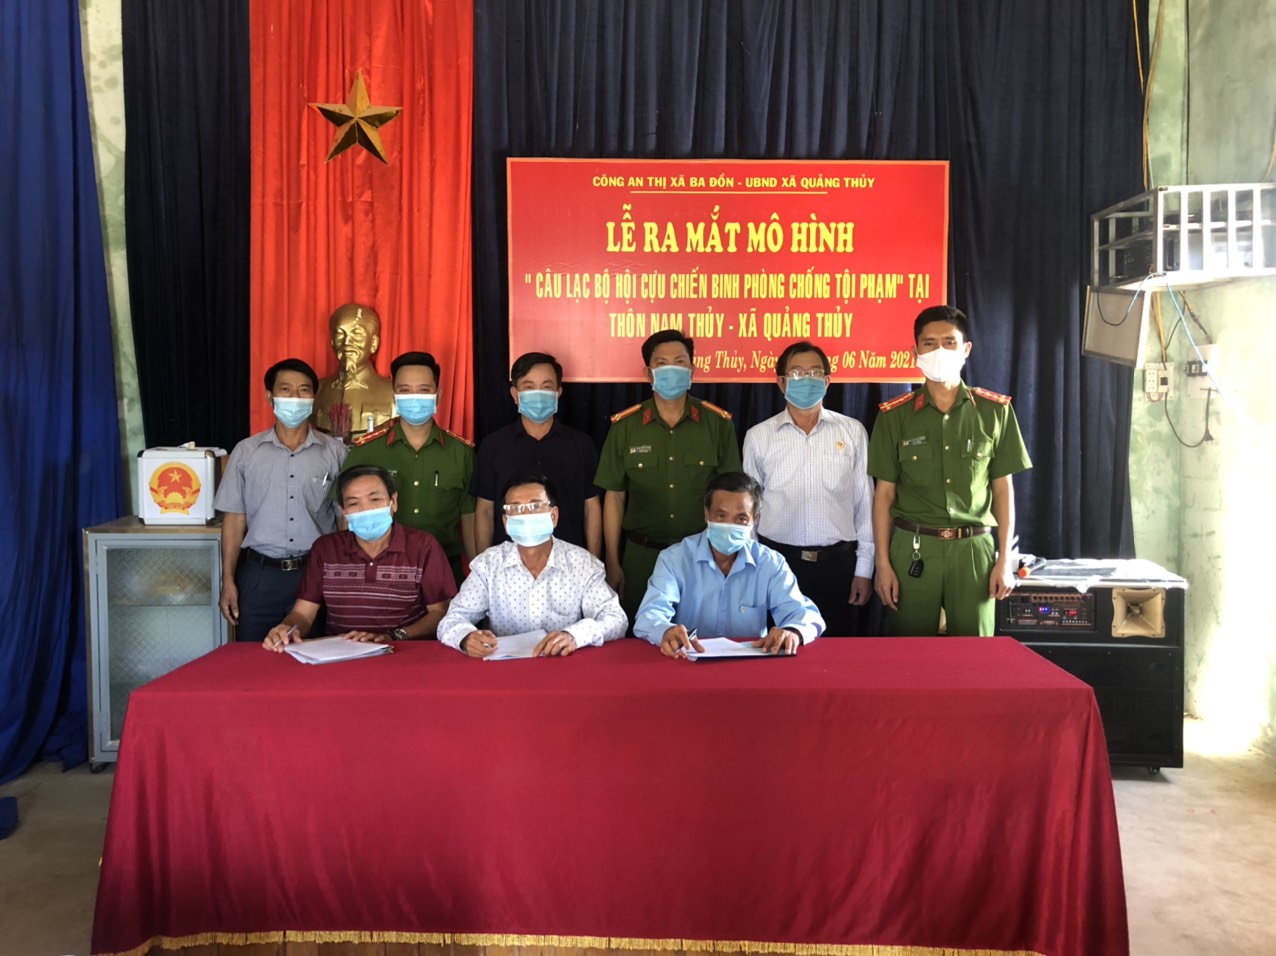 Ra mắt mô hình “Câu lạc bộ Hội cựu chiến binh phòng chống tội phạm” tại xã Quảng Thủy